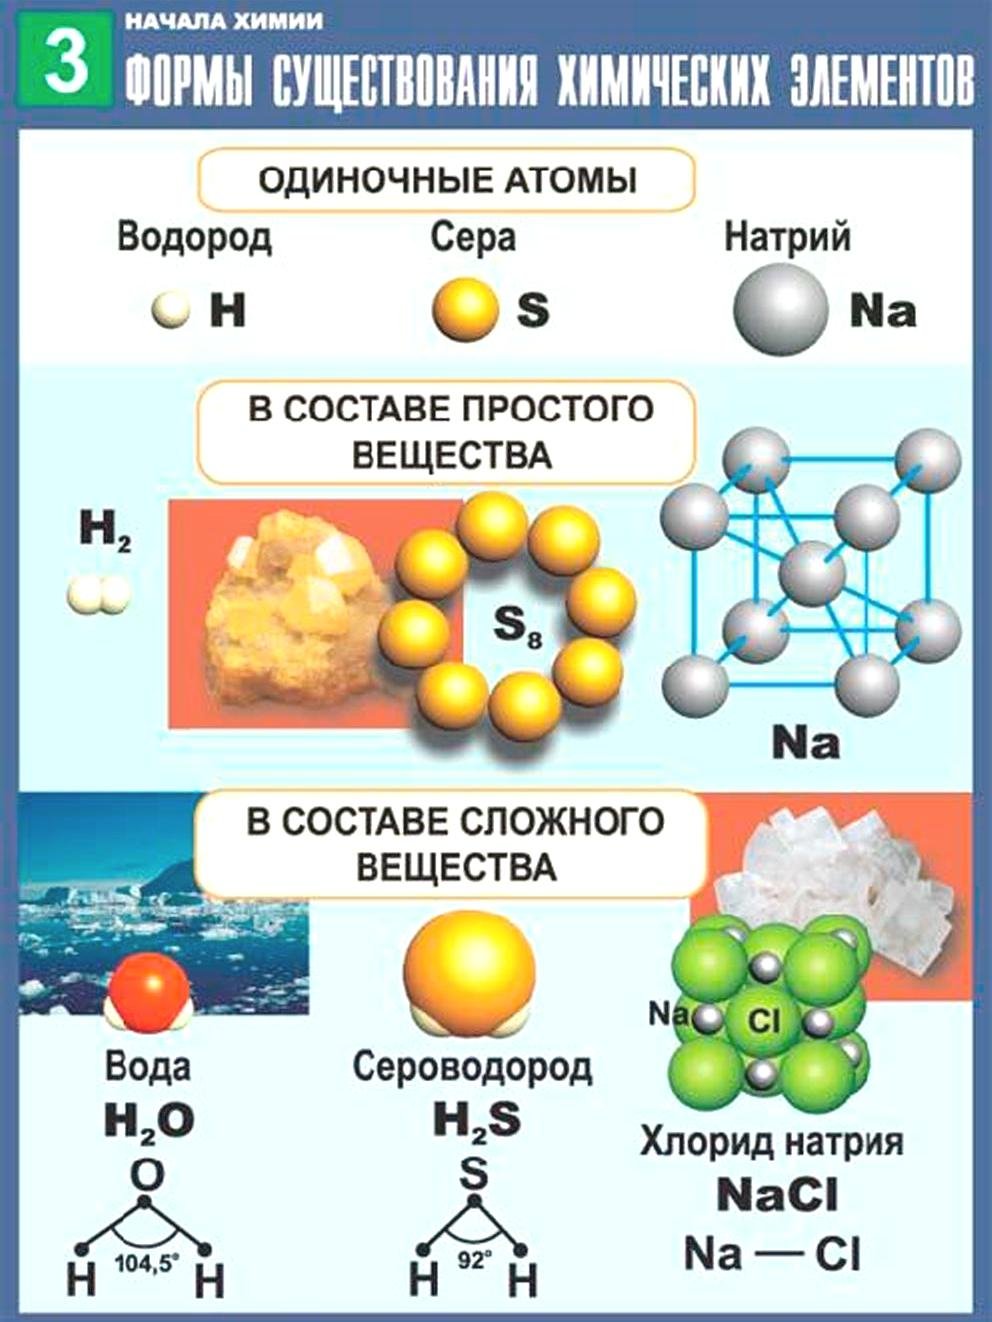 5 сложных элементов. Простые сложные вещества хим элементов. Химические соединения простые и сложные вещества. Атомные молекулы химические элементы таблица. Формы существования хим элементов таблица.